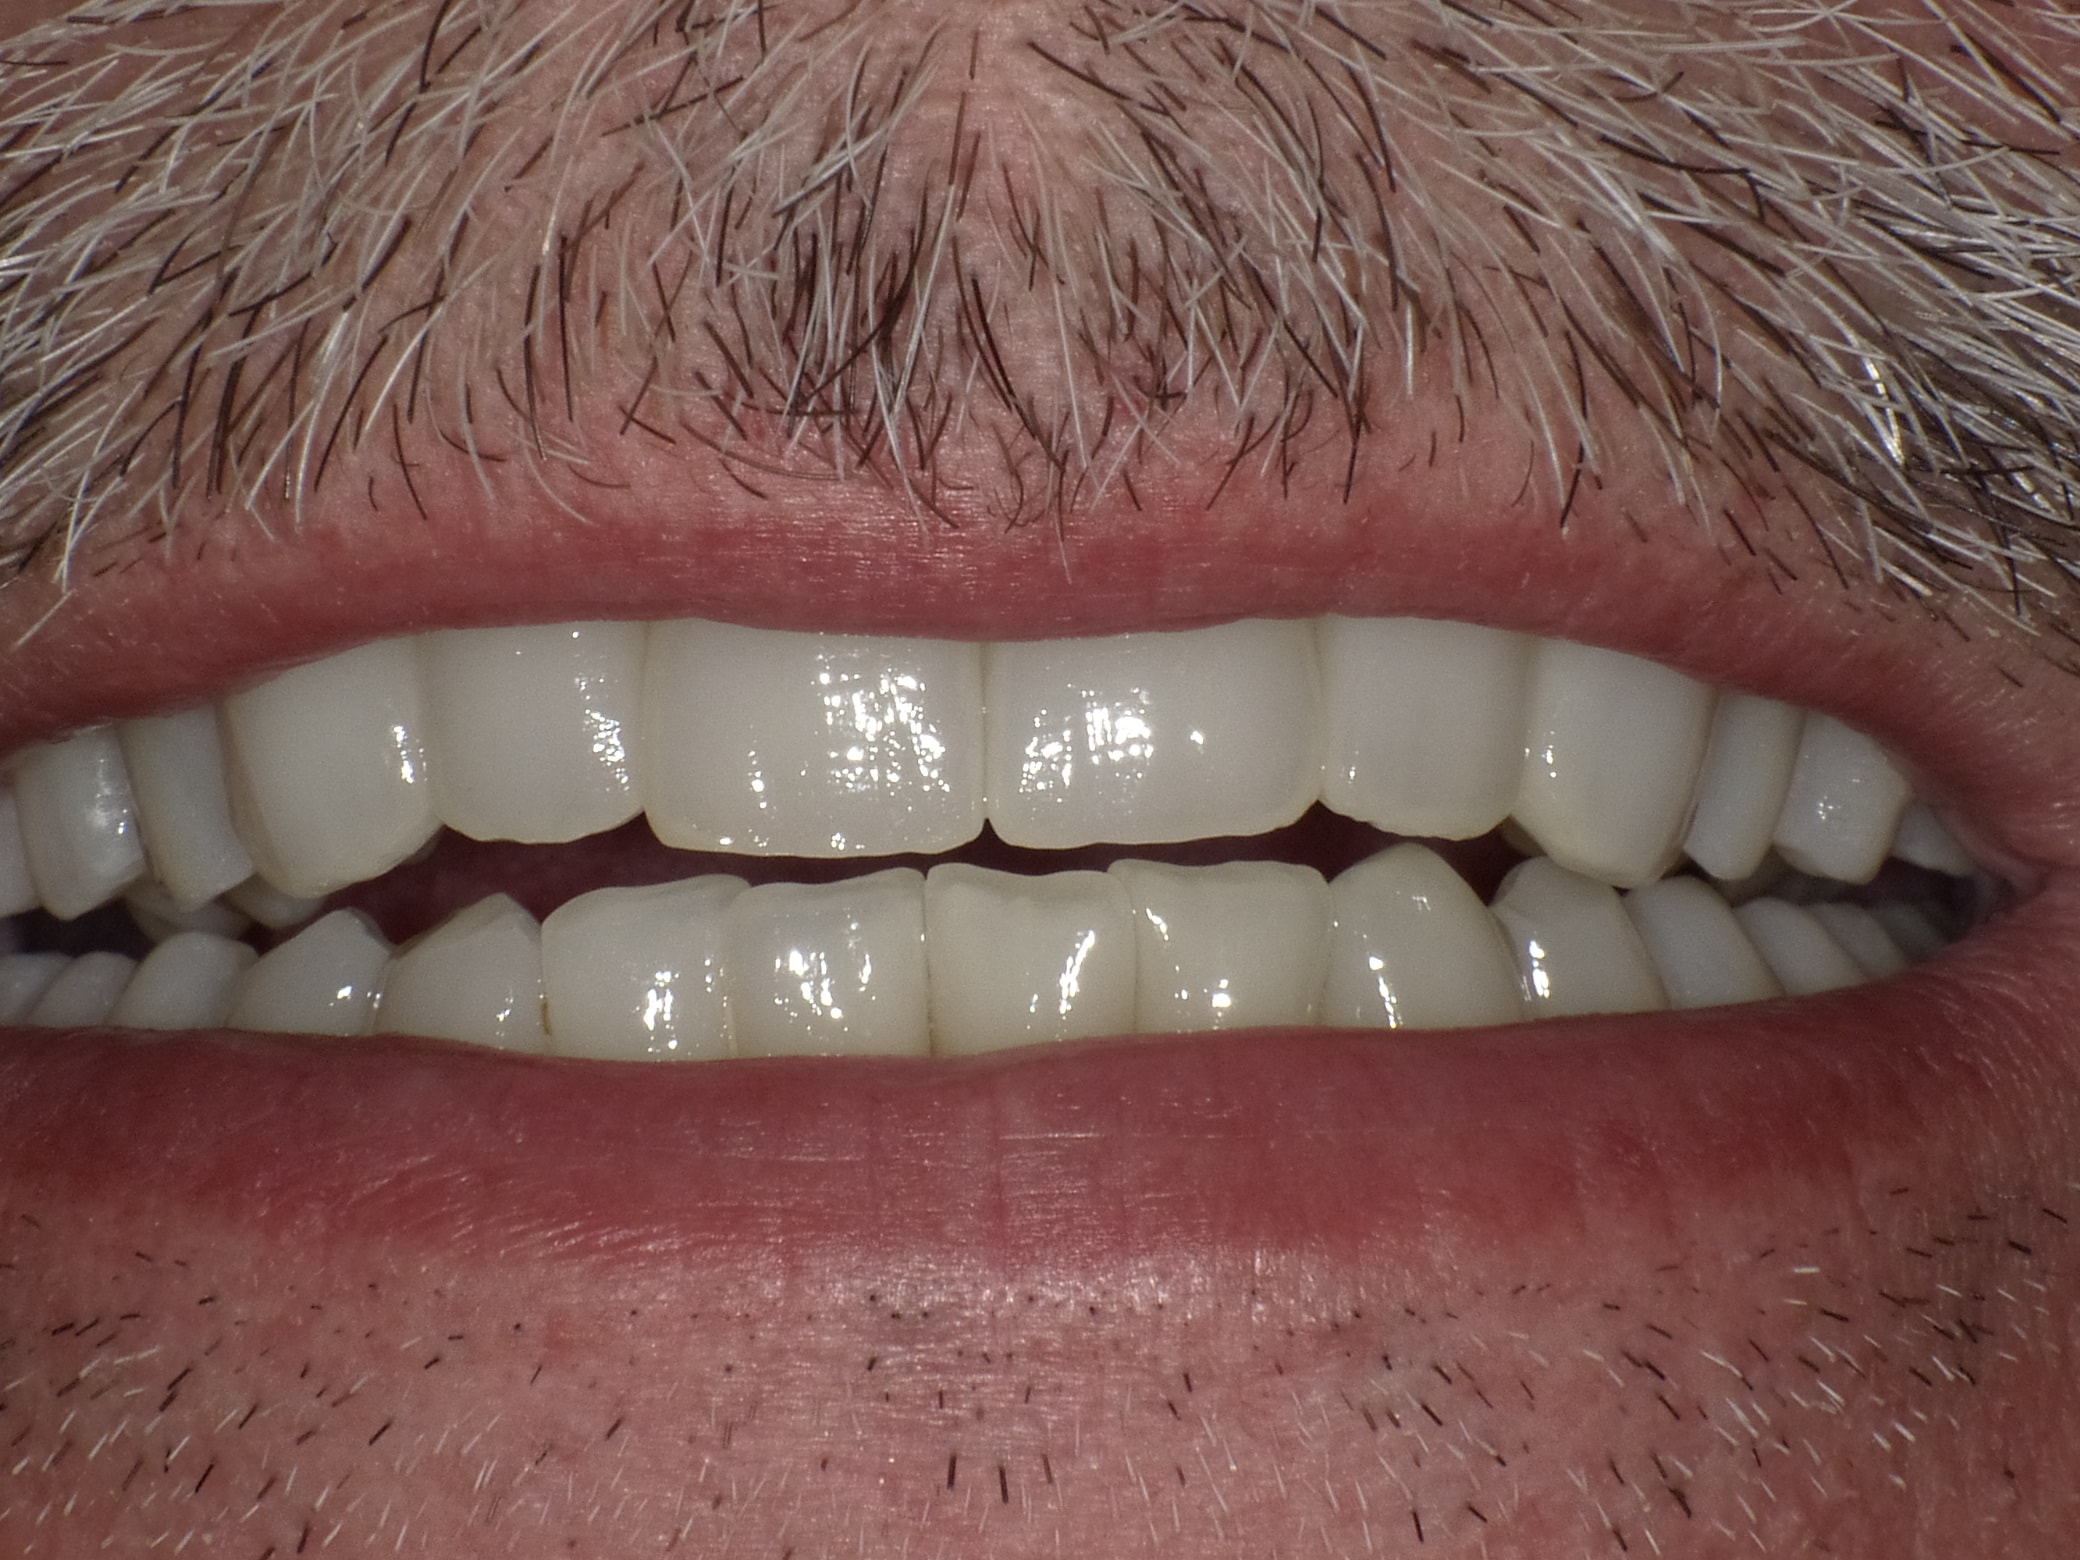 Gesamtbehandlung in Sedierung: die Seitenzähne wurden durch Keramik-Implantate (Zahnentfernungen und Sofortimplantation) mit Knochenaufbau ersetzt; anschließend Gesamtüberkronung aus Vollkeramik mit Optimierung der Ästhetik